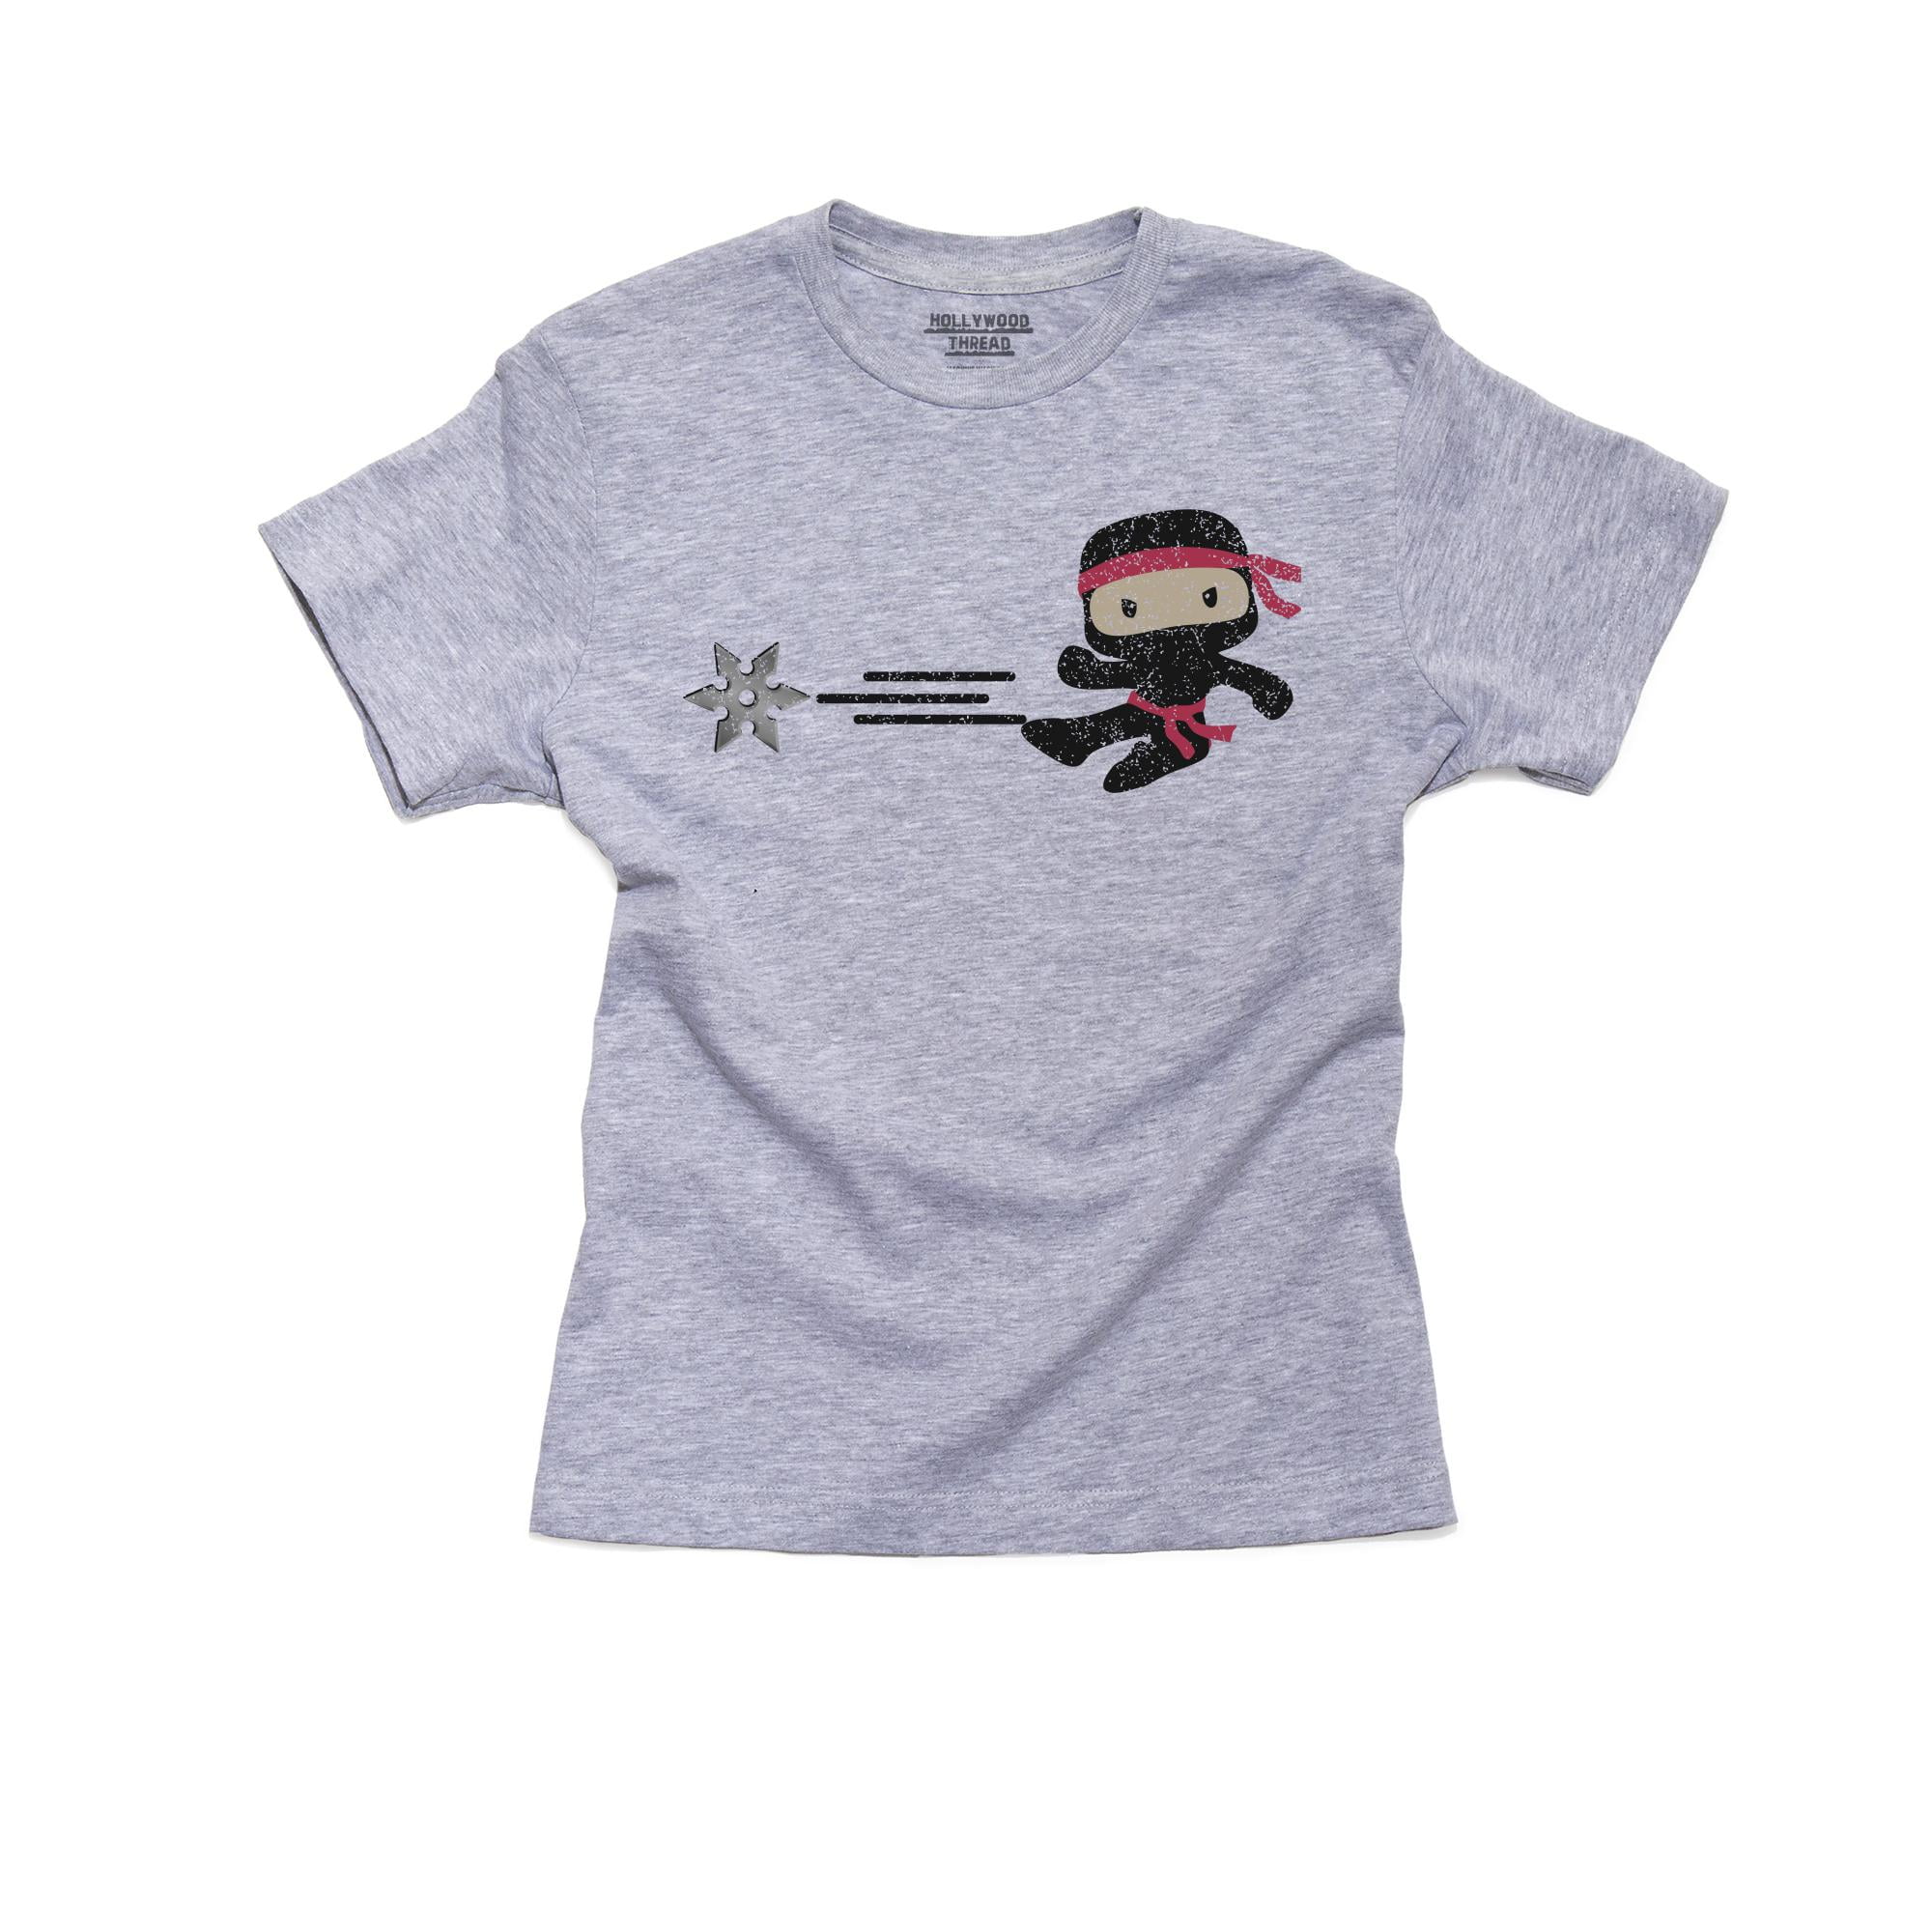 Alien Ninja Girl T shirt